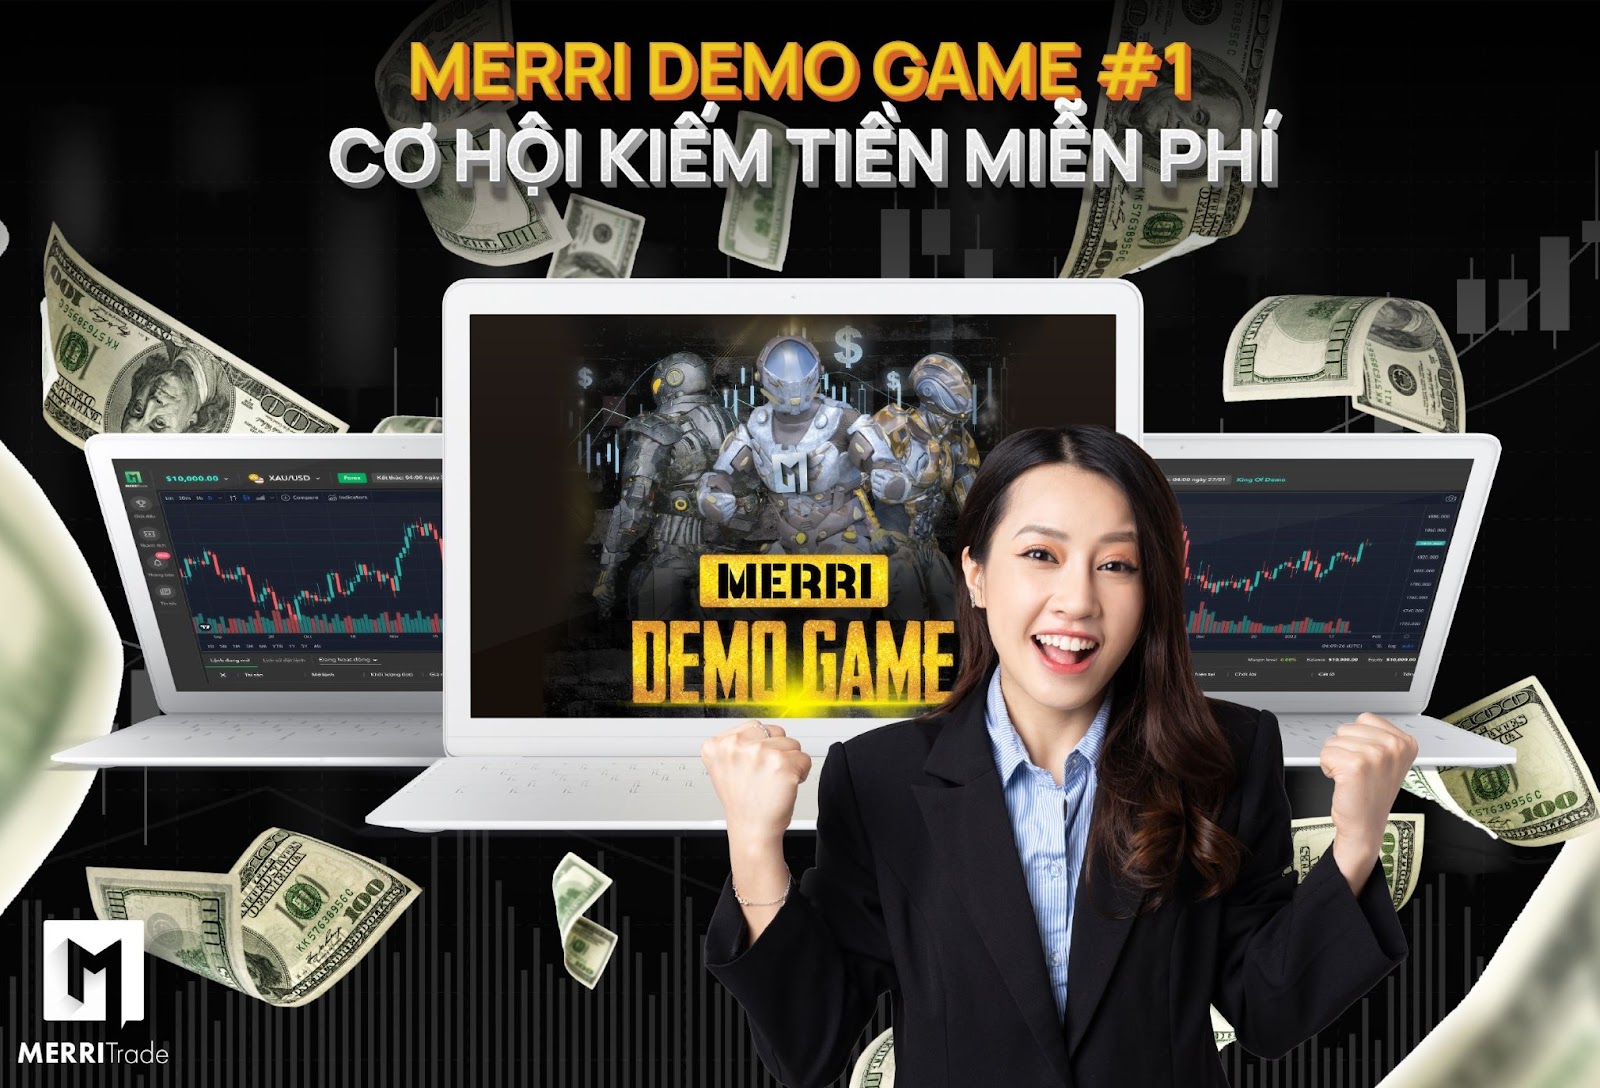 Merri Demo Game - Trade Demo Thưởng Thật 100% hình - vtradetop.com